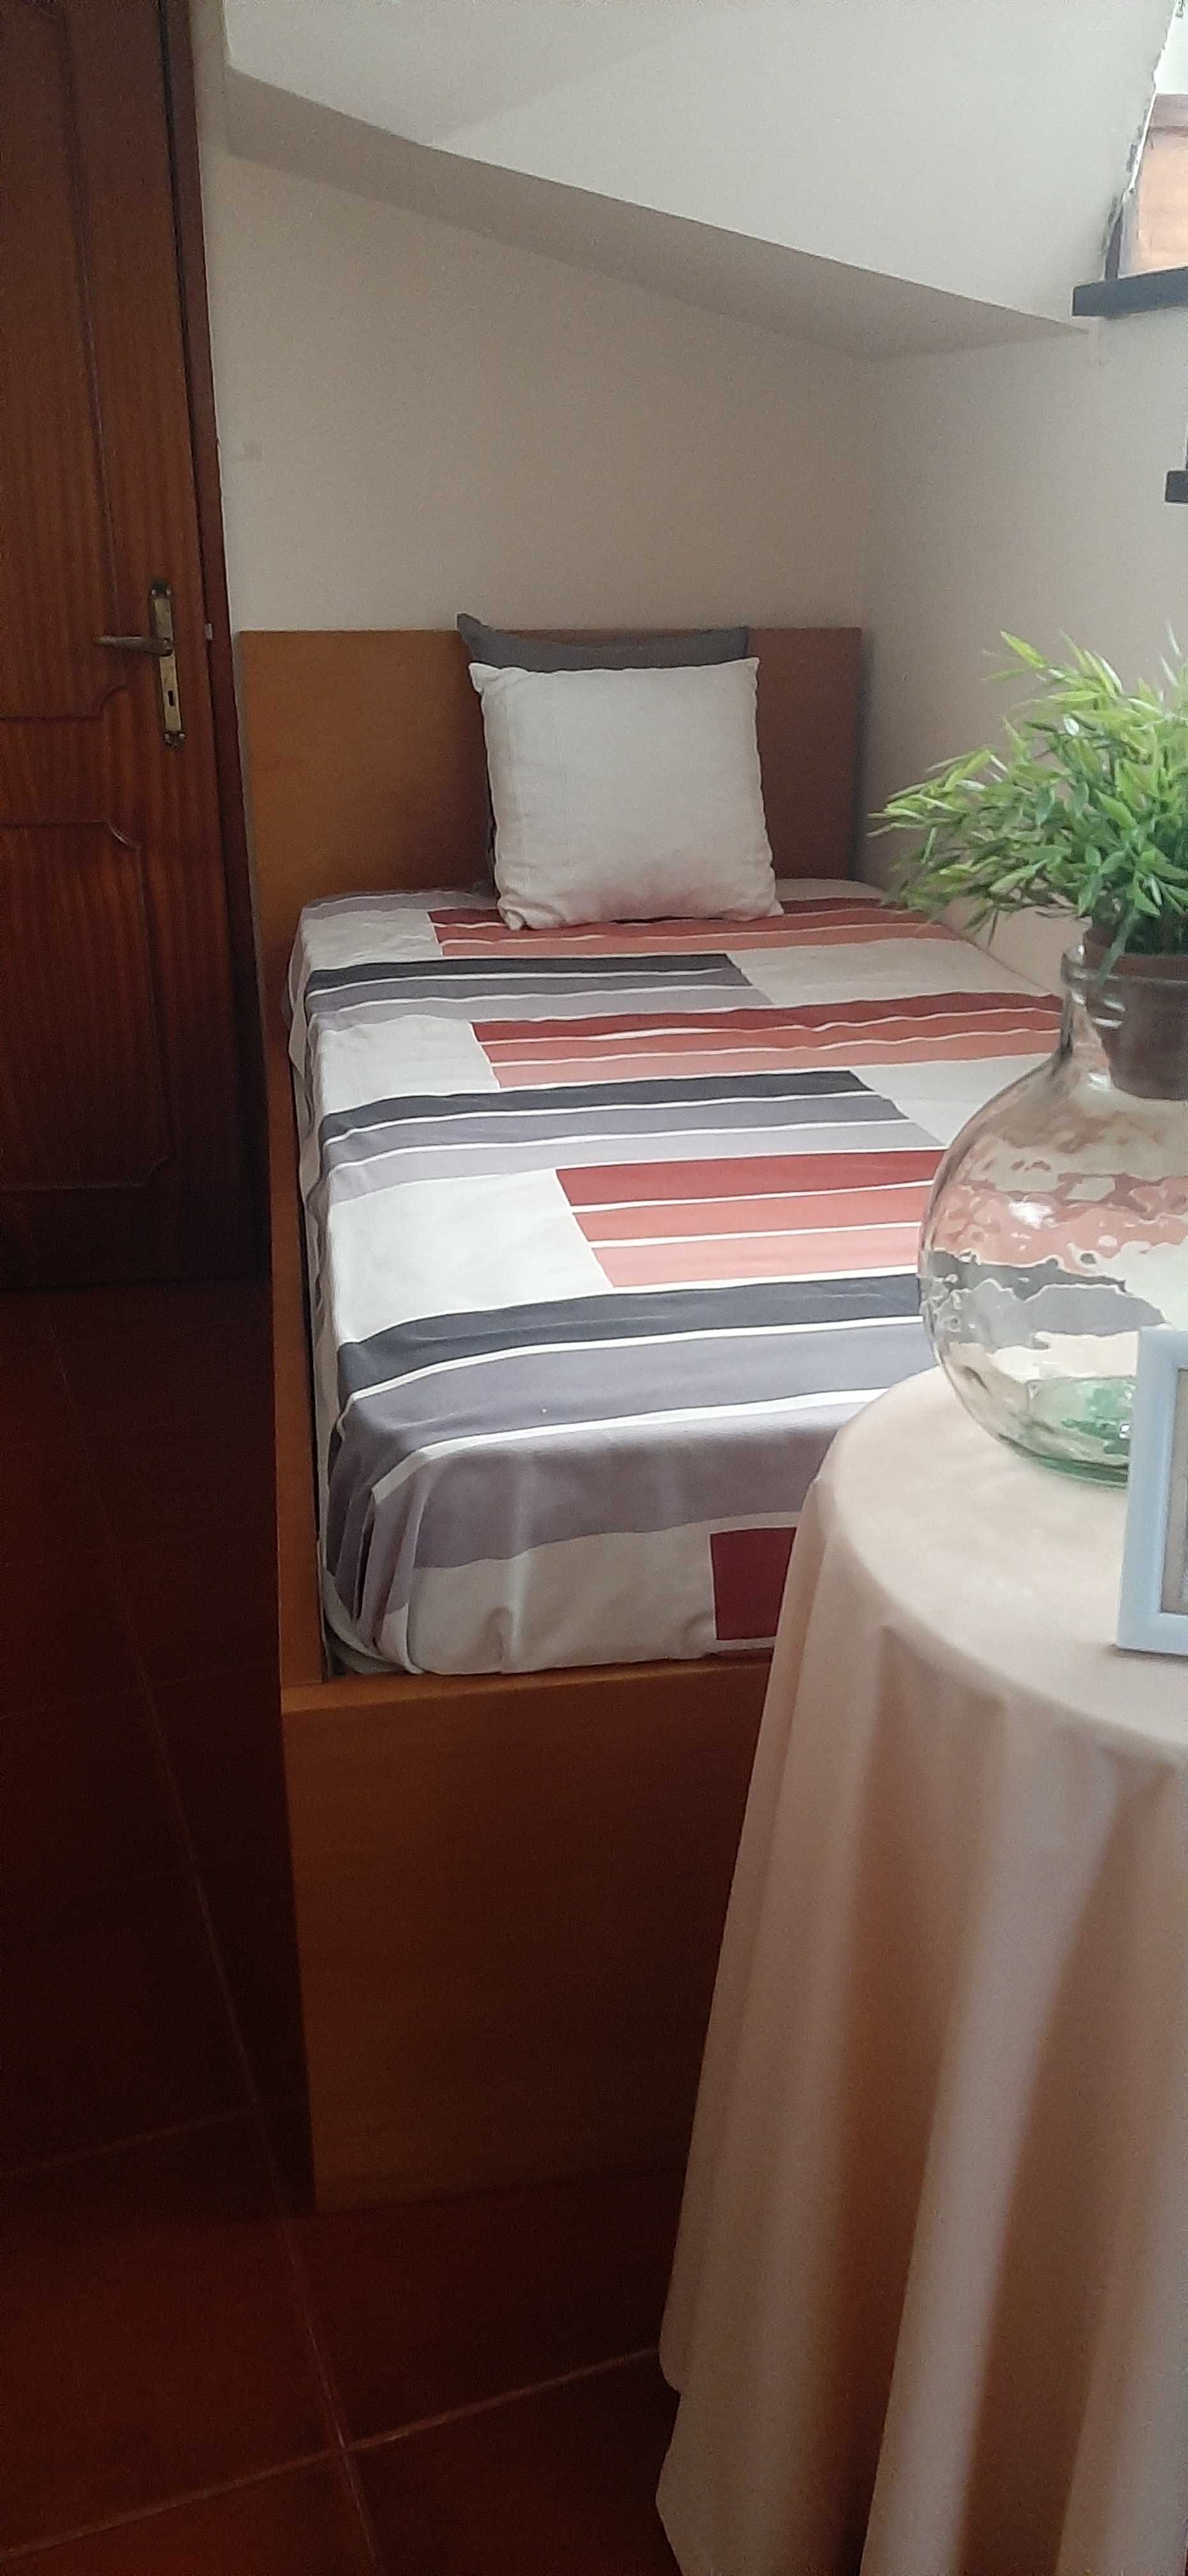 Cama dupla em Madeira maciça - 2 camas de solteiro + 2 colchões